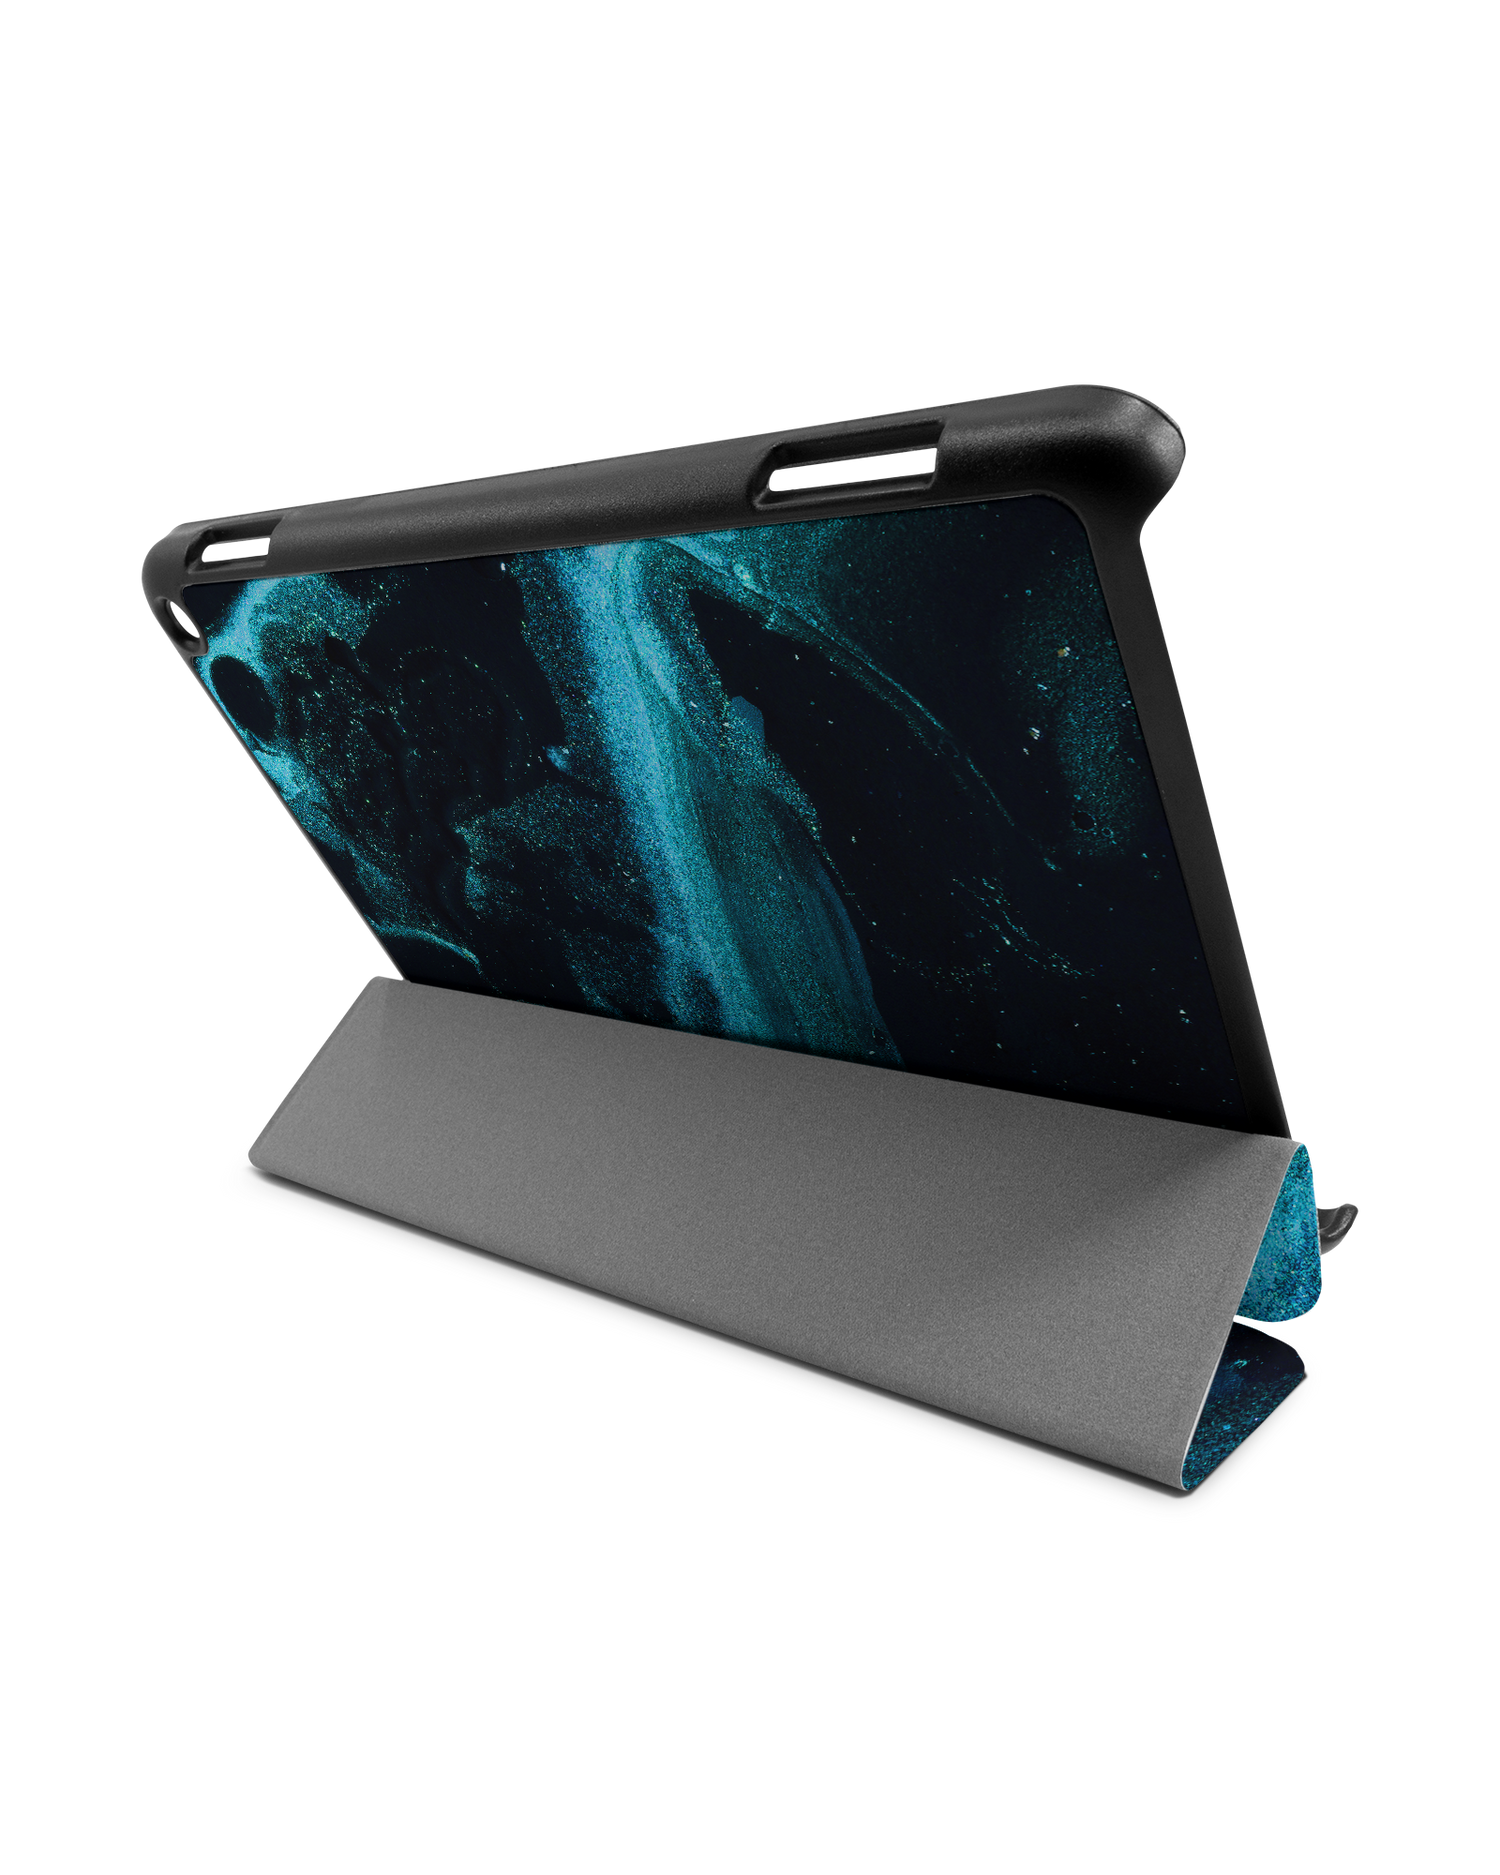 Deep Turquoise Sparkle Tablet Smart Case für Amazon Fire HD 8 (2022), Amazon Fire HD 8 Plus (2022), Amazon Fire HD 8 (2020), Amazon Fire HD 8 Plus (2020): Aufgestellt im Querformat